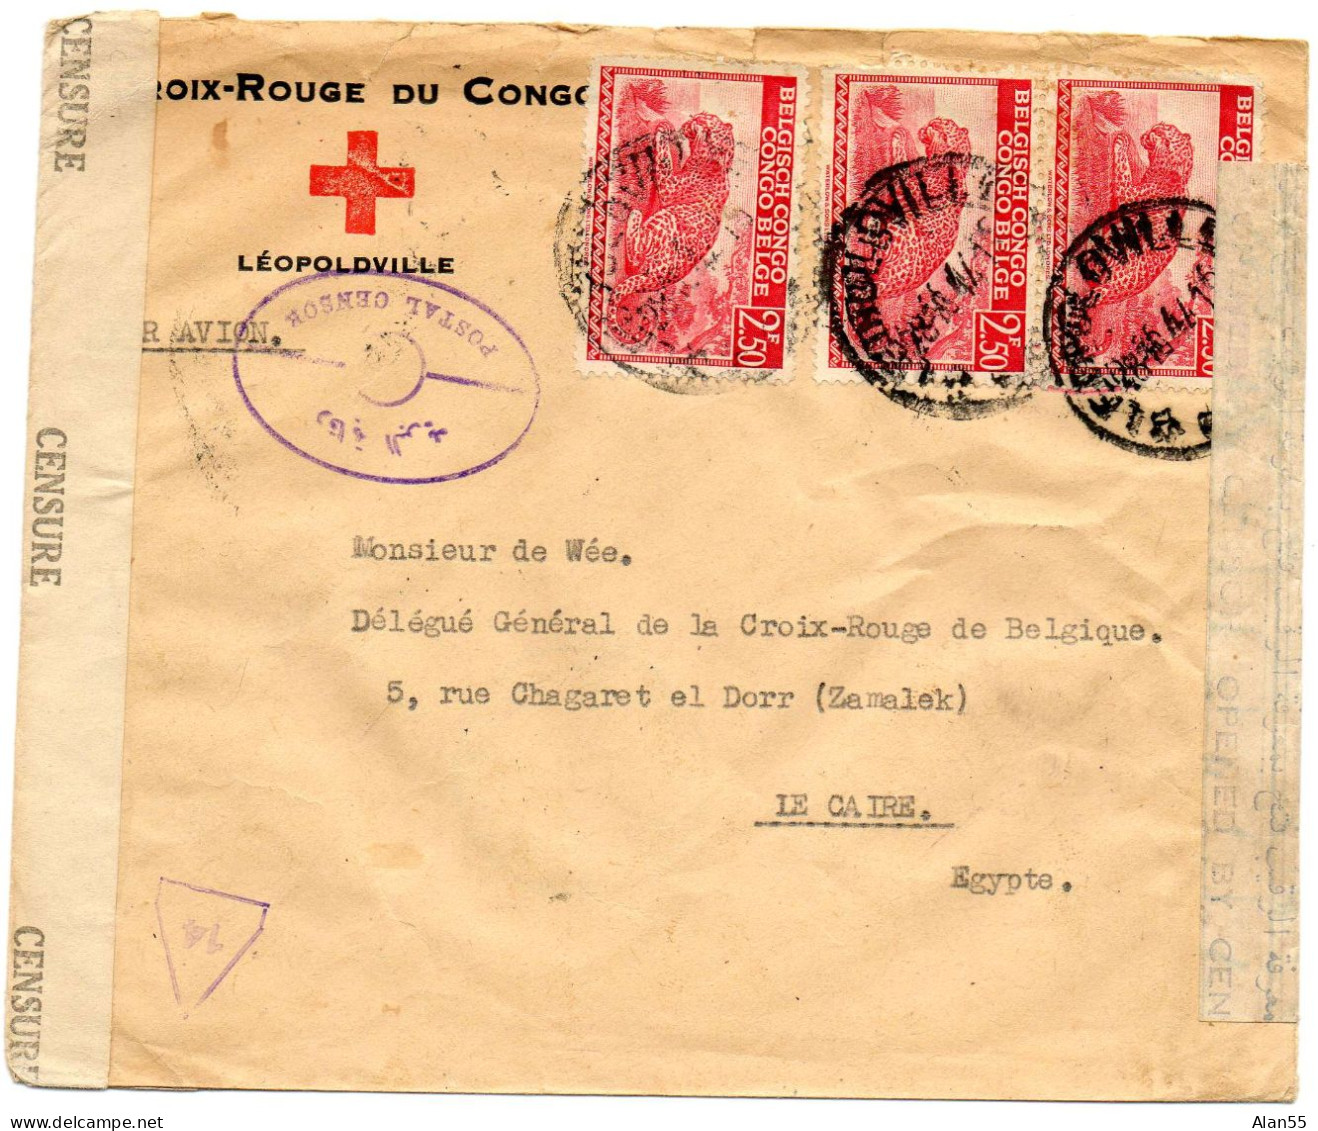 CONGO BELGE. 1944. CROIX-ROUGE DU CONGO A LEOPOLDVILLE POUR CROIX-ROUGE BELGE EN EGYPTE. DOUBLE CENSURE. - Brieven En Documenten